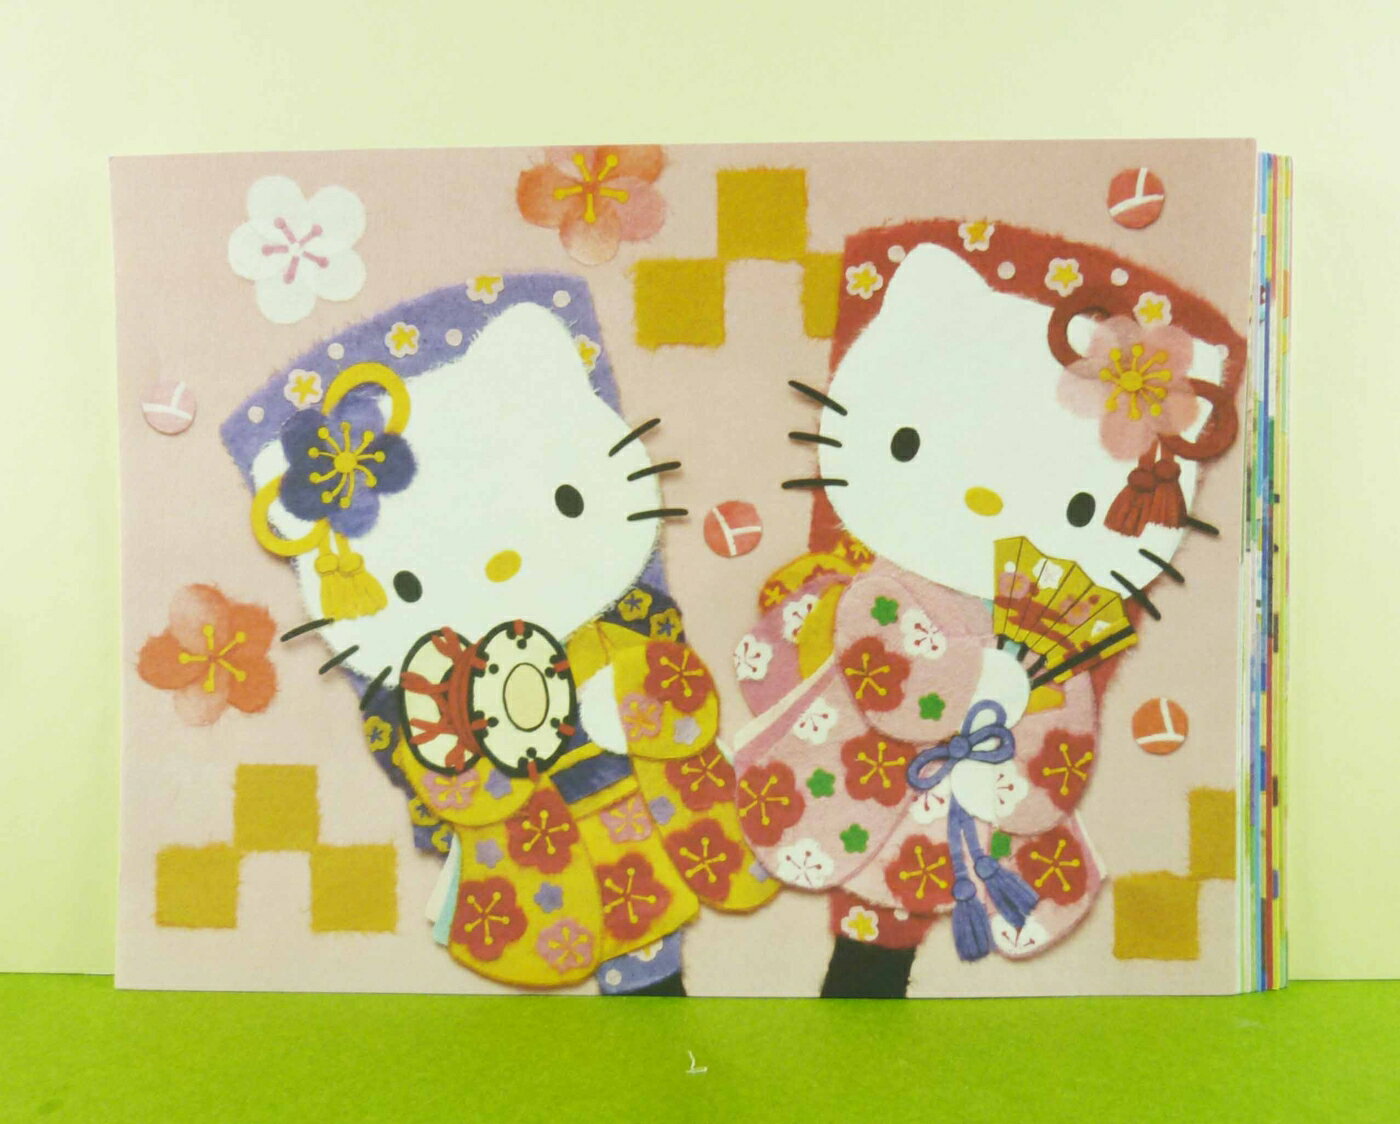 【震撼精品百貨】Hello Kitty 凱蒂貓 卡片-12入和風 震撼日式精品百貨